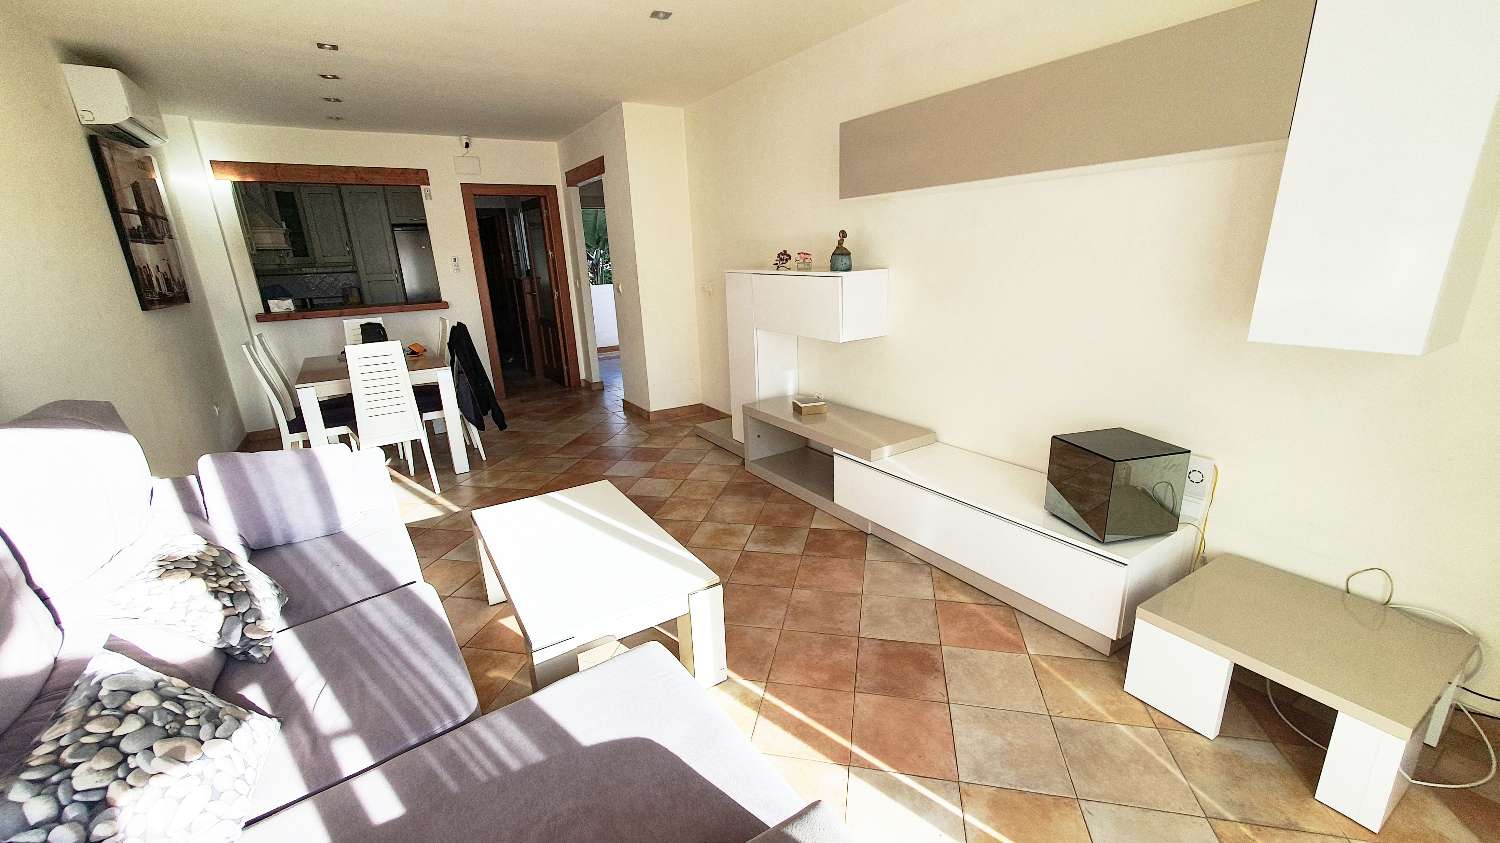 Lägenhet till salu i Almuñecar med stor terrass och nära San Cristobal-stranden